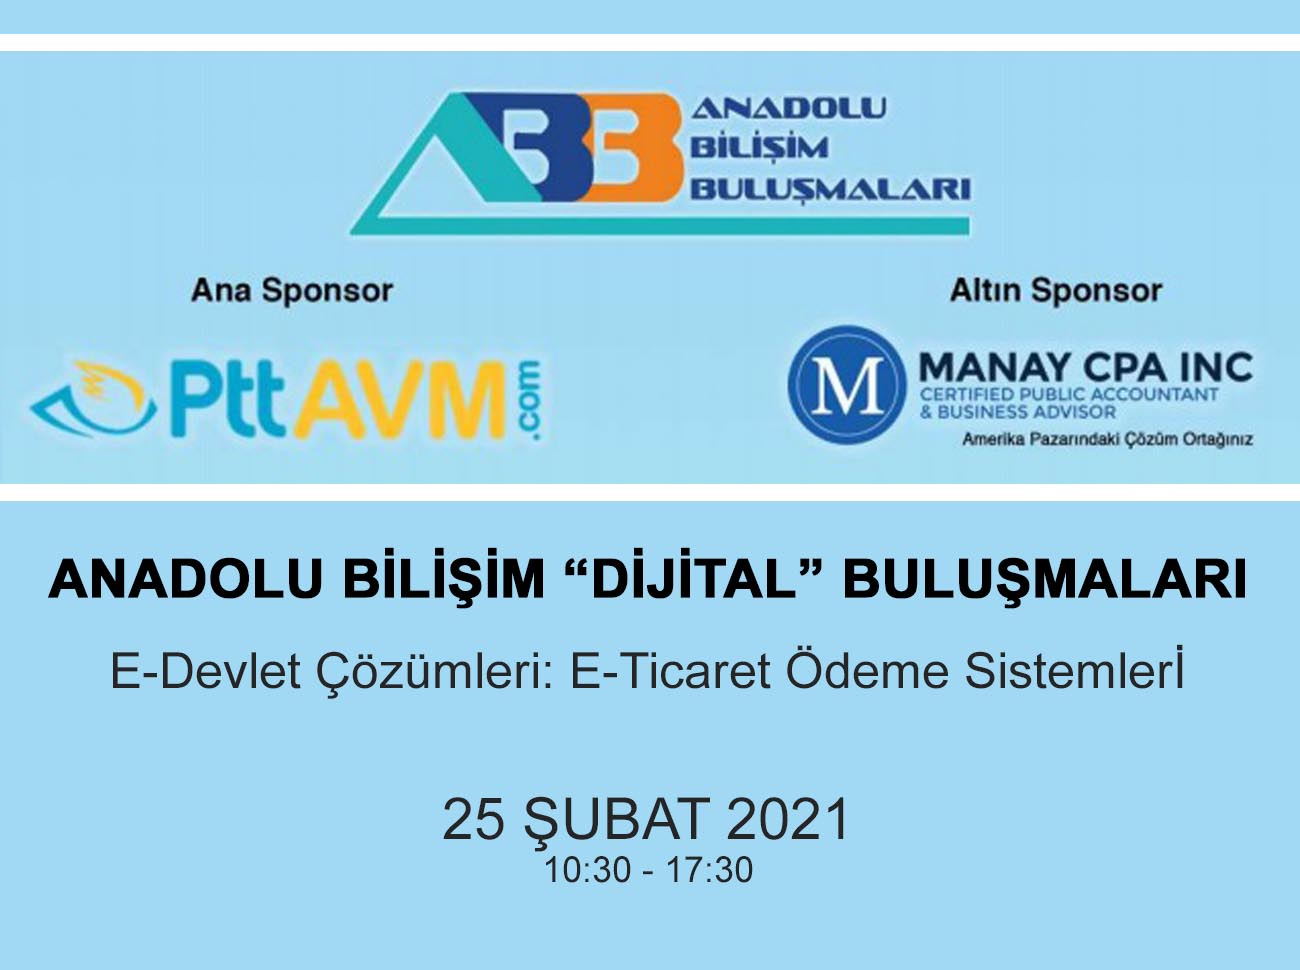 Anadolu Bilişim Dijital Buluşmaları 25 Şubat'ta